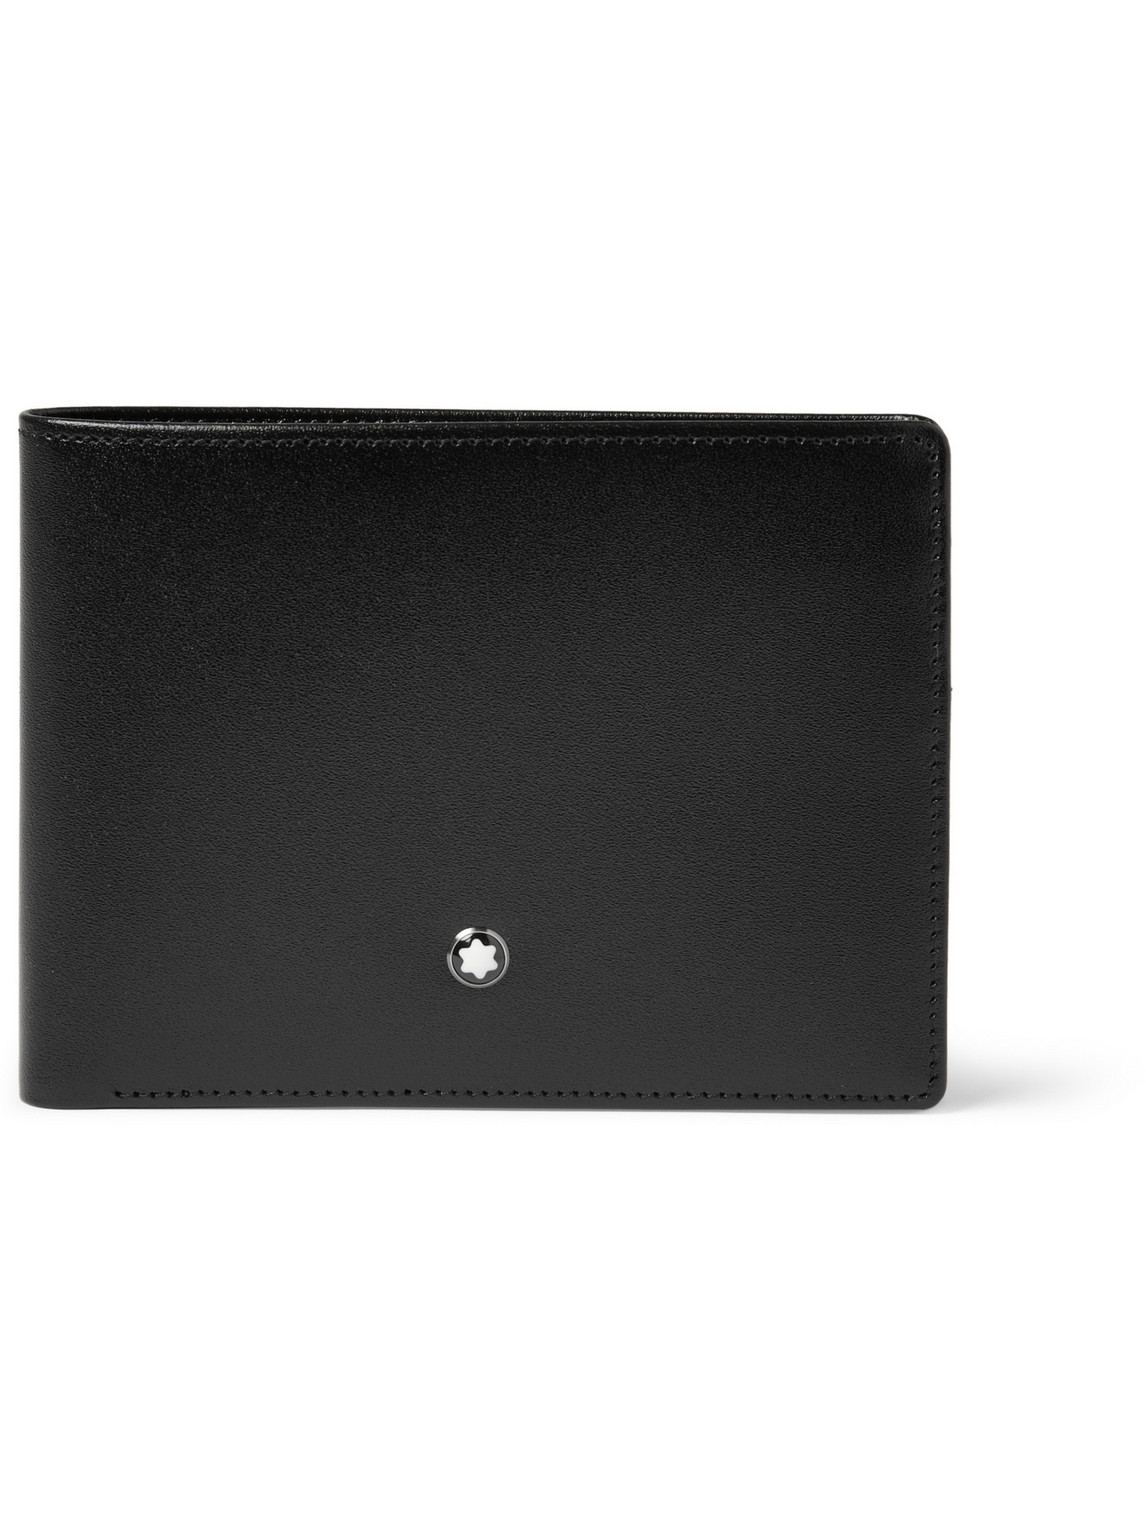 Montblanc Meisterstück Leather Billfold Wallet In Black